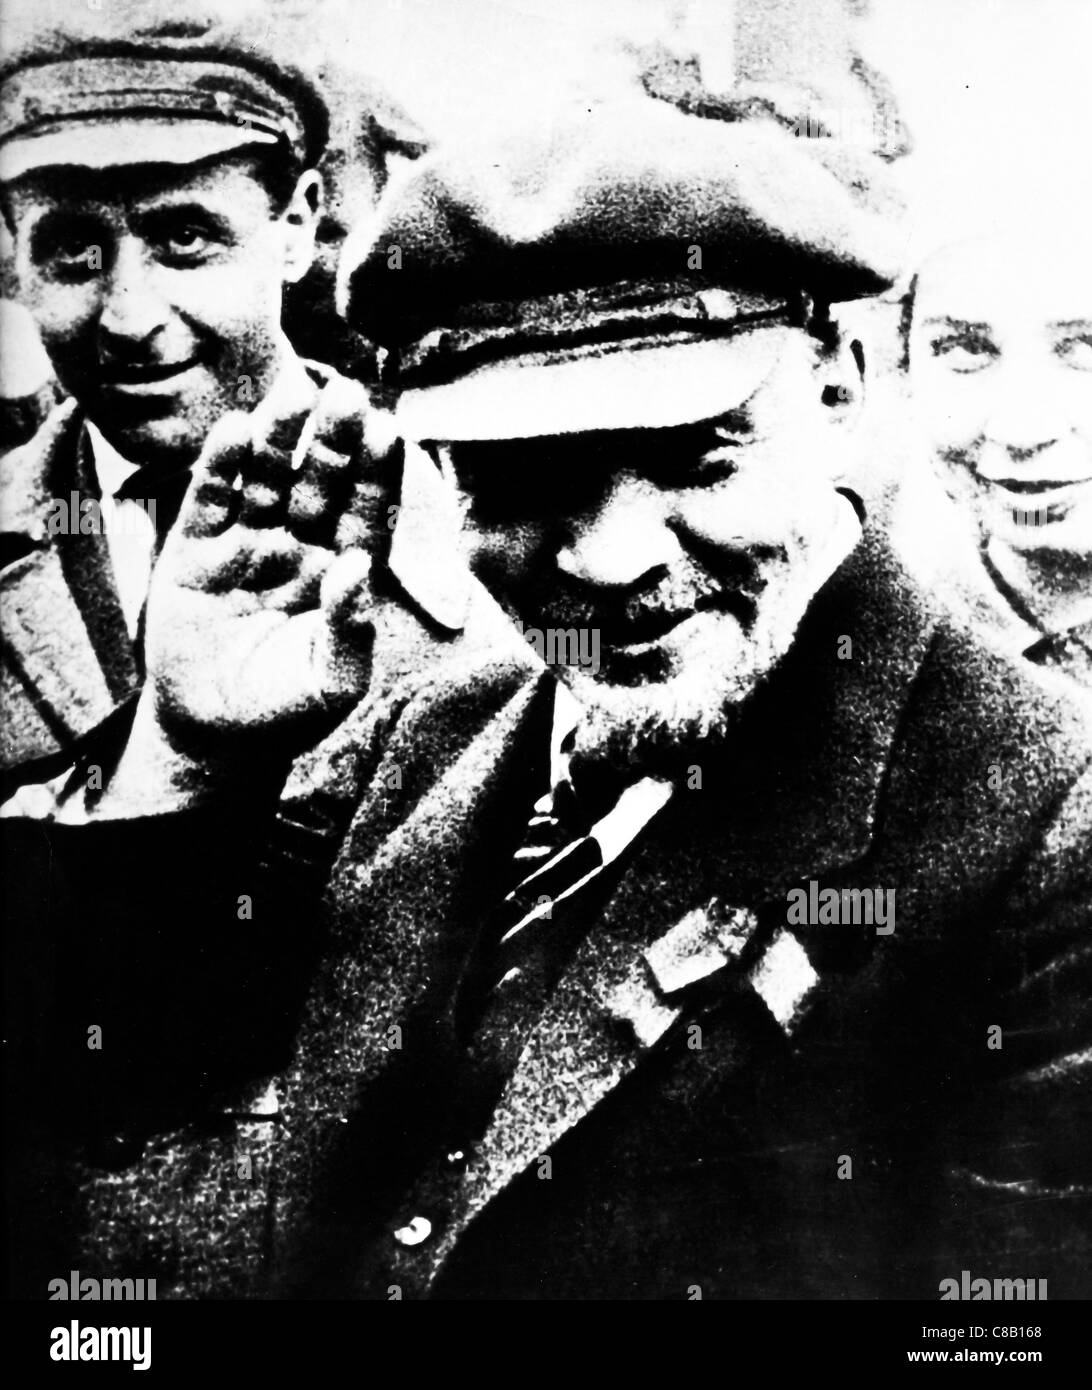 Vladimir Ilyich Ulyanov ' Lenin' Stock Photo